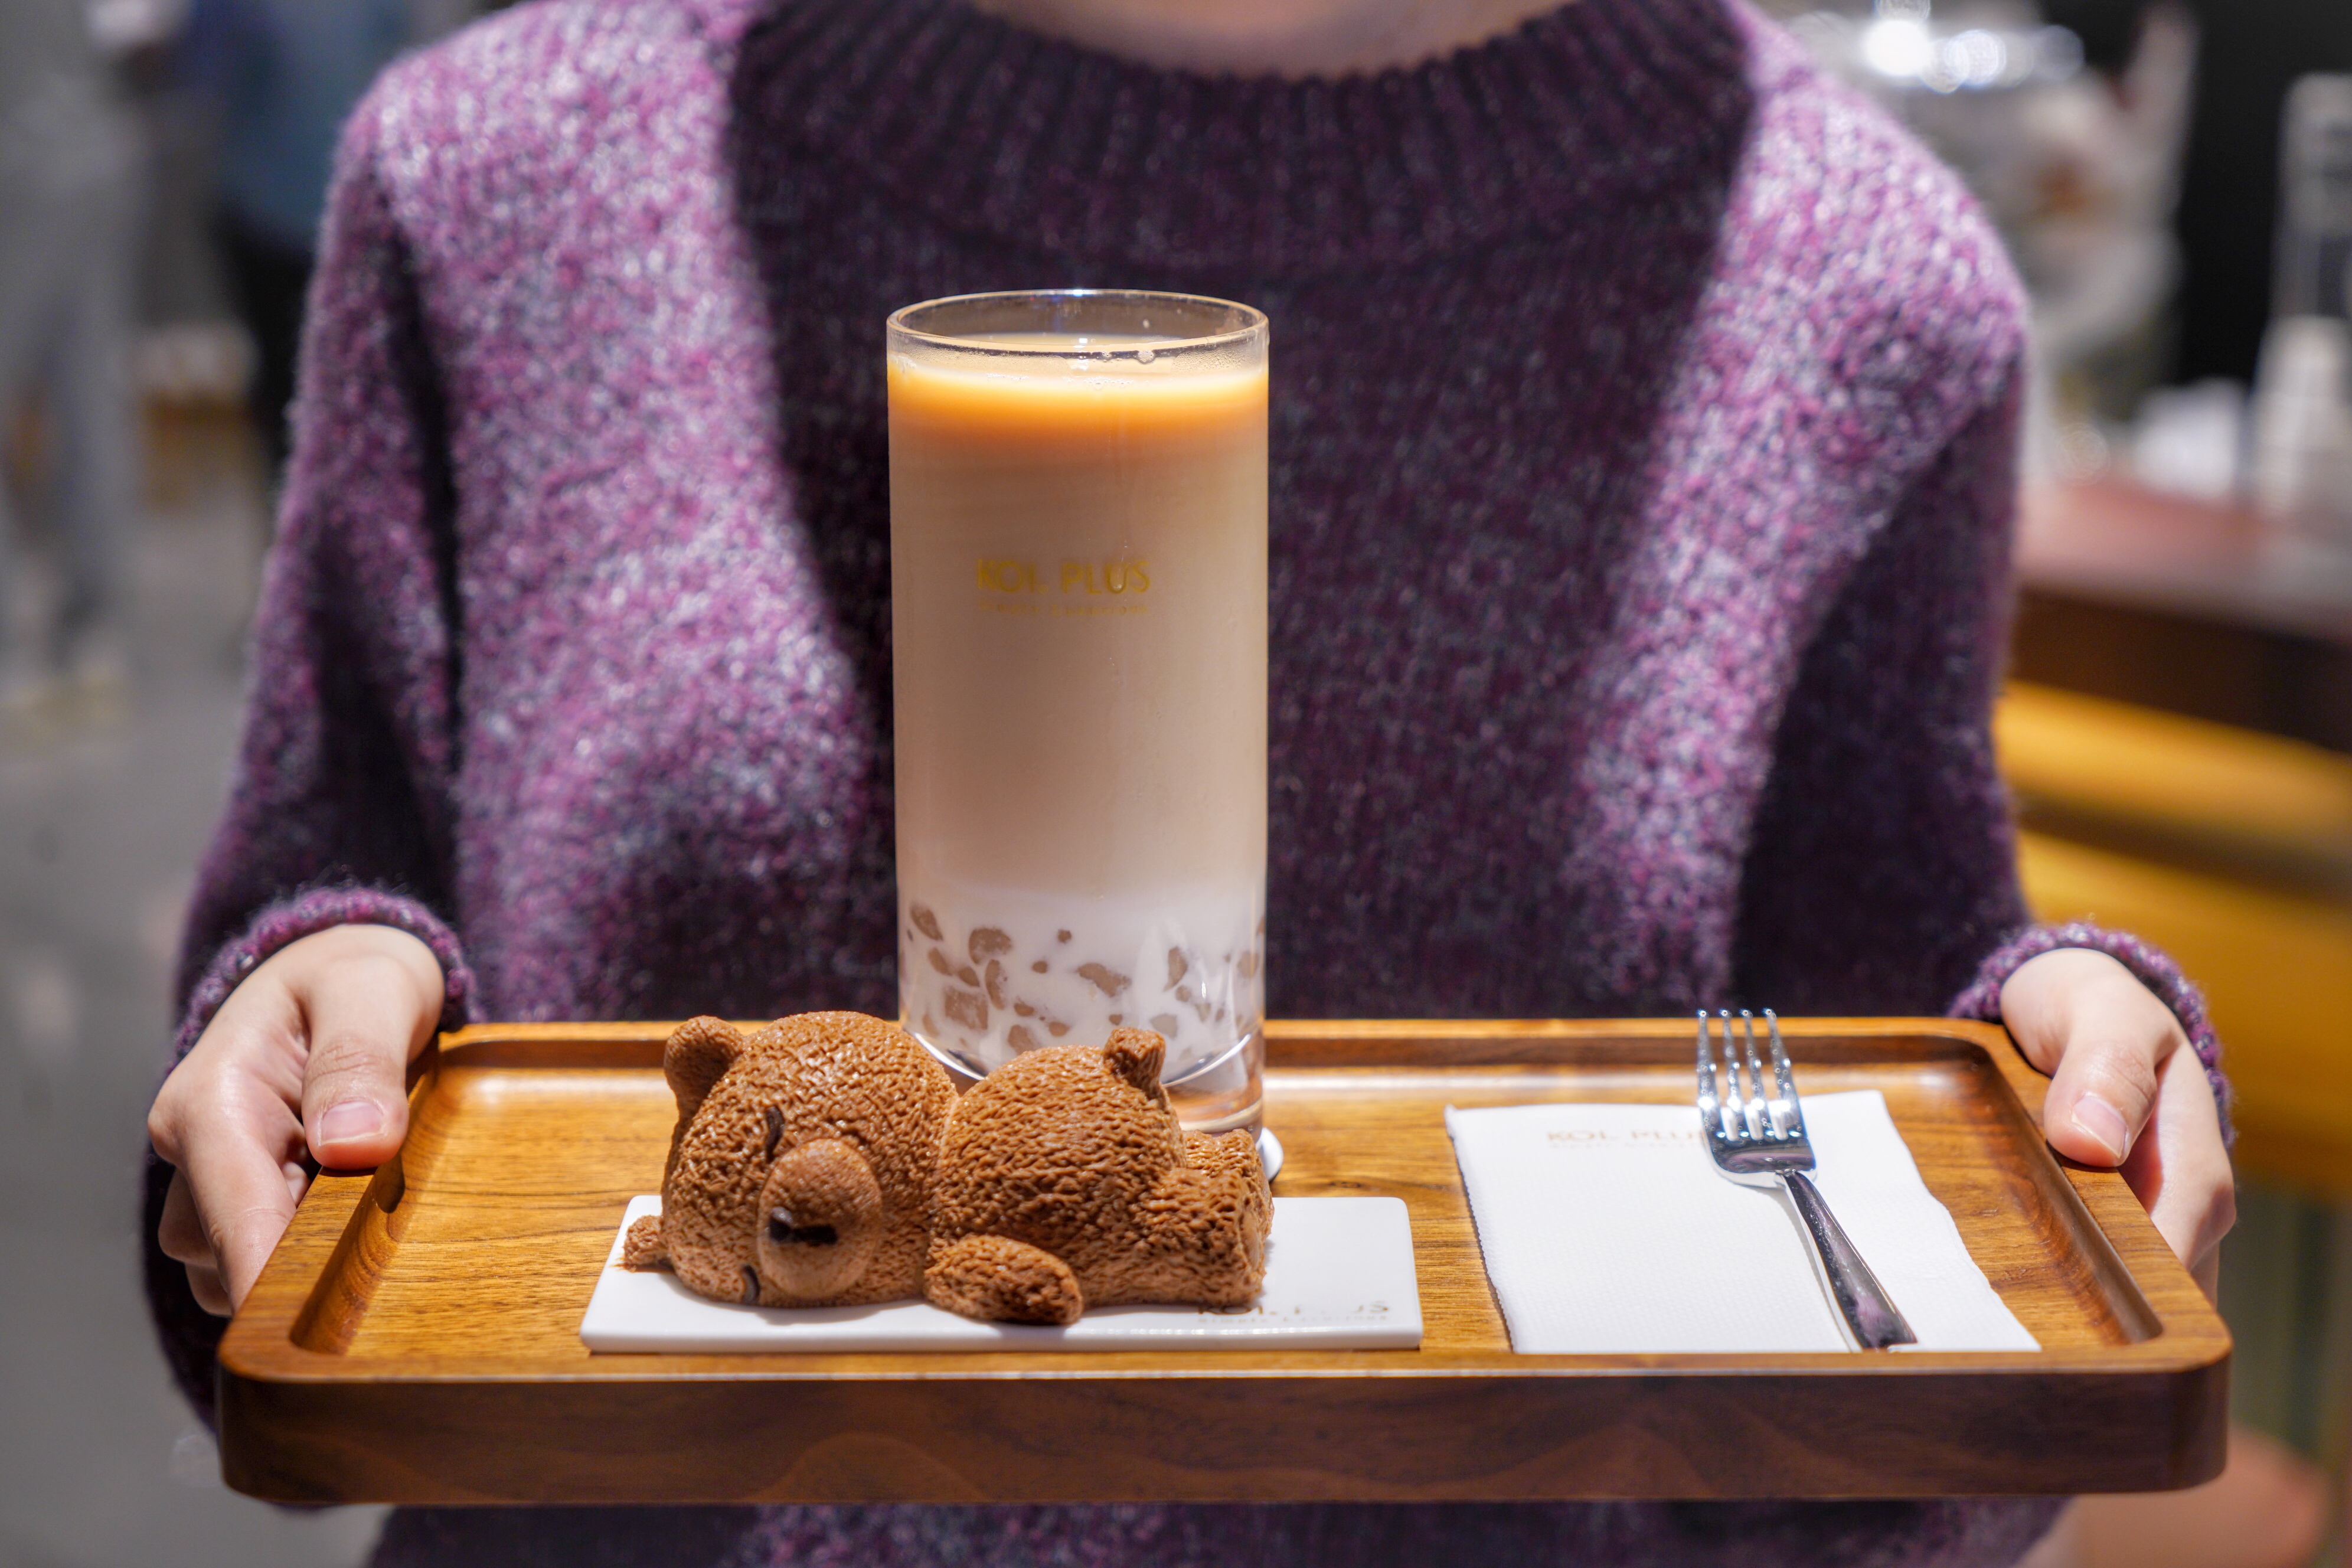 来自台湾家喻户晓的奶茶店,推出升级版系列,改变年轻人的泡茶方式!